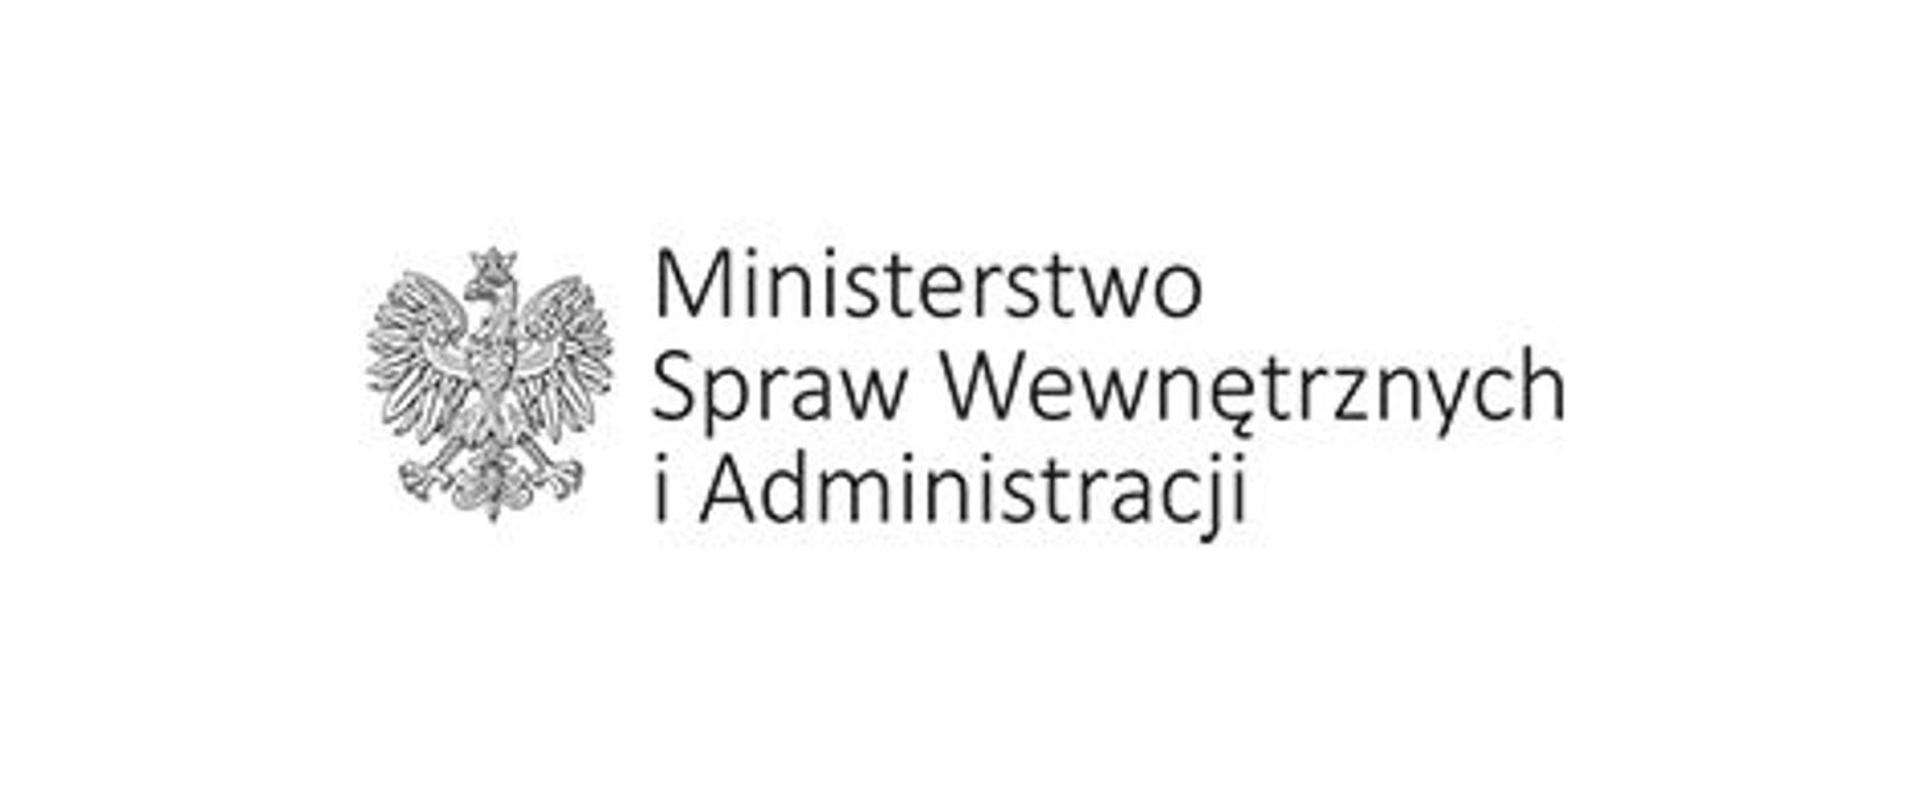 Napis Ministerstwo Spraw Wewnętrznych i Administracji, po lewej stronie Wizerunek Orła białego w koronie na białym tle